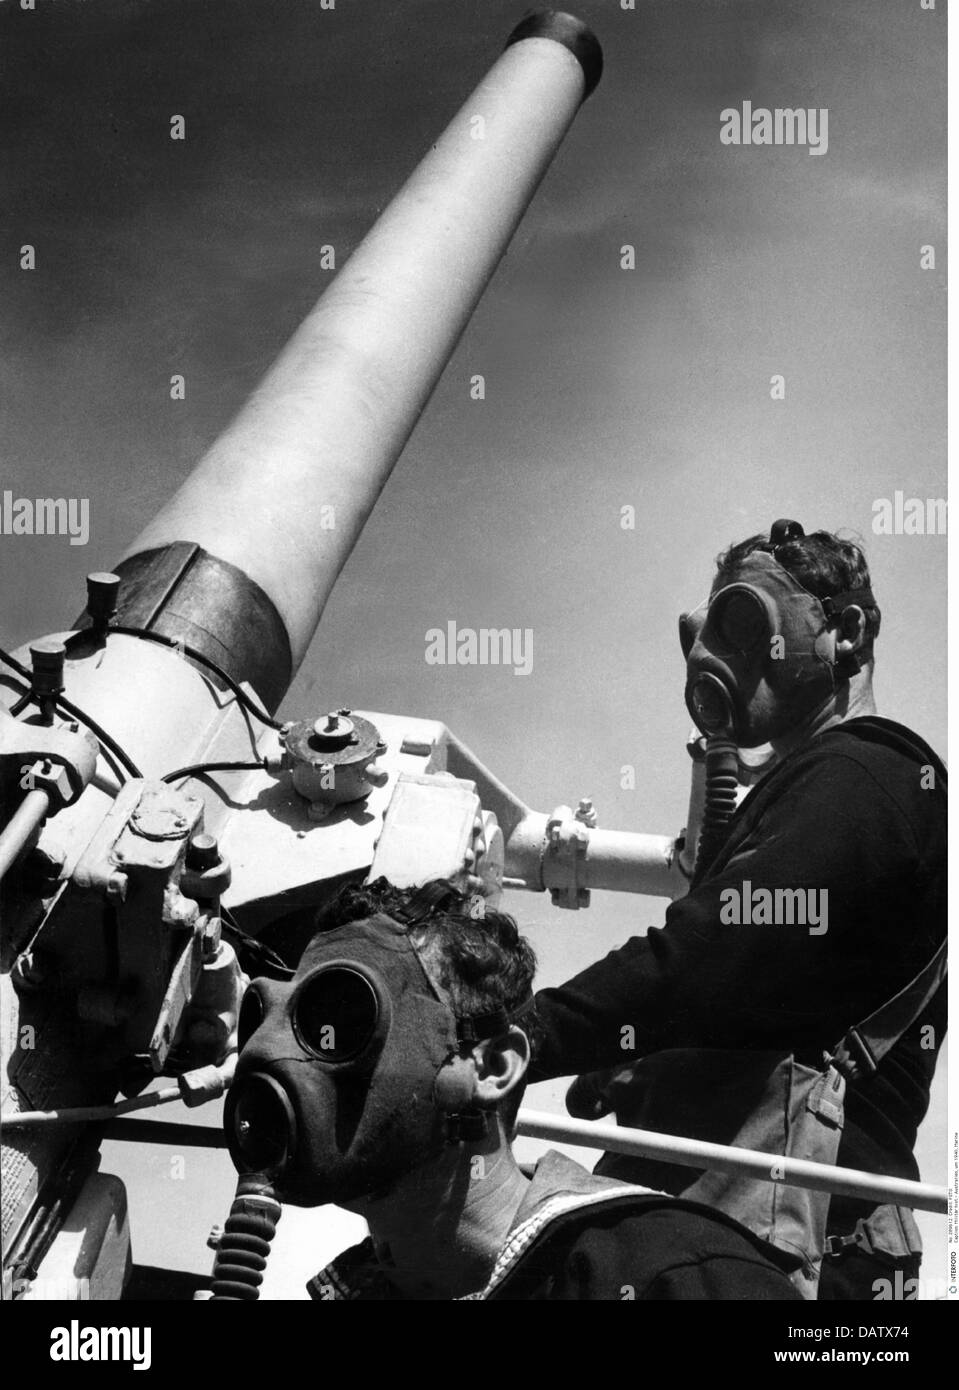 Militaire, Australie, vers 1940, marine, exercice de tir antiaérien, artilerymen avec masques à gaz à bord du HMAS 'Canberra', exercice dans la baie de Jervis, droits additionnels-Clearences-non disponible Banque D'Images